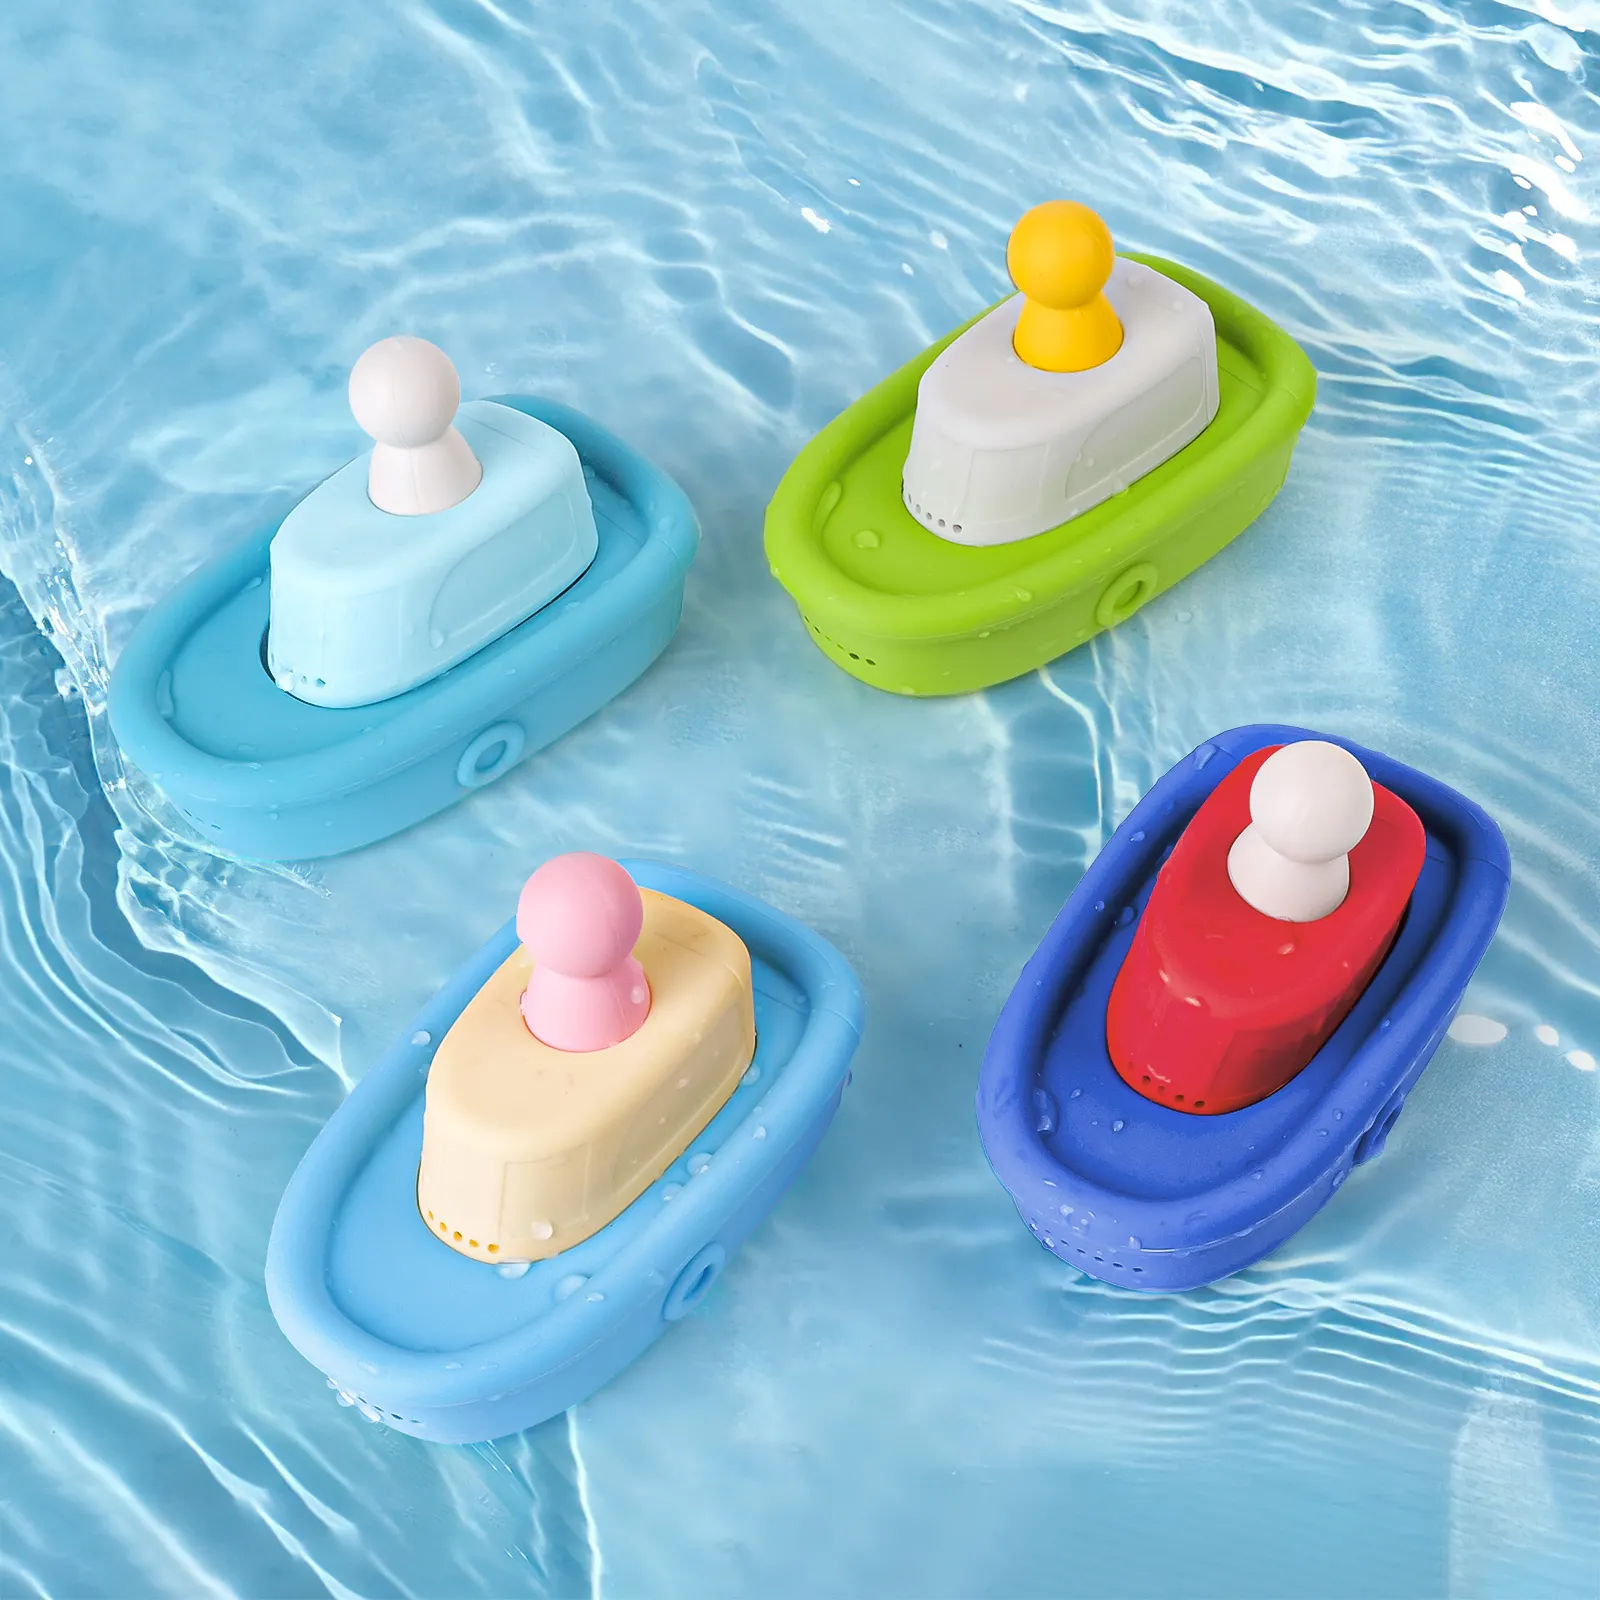 Meilleur vendeur mignon coloré sans BPA Silicone de qualité alimentaire enfants bateau jouets pour bébé bain moussant jouet